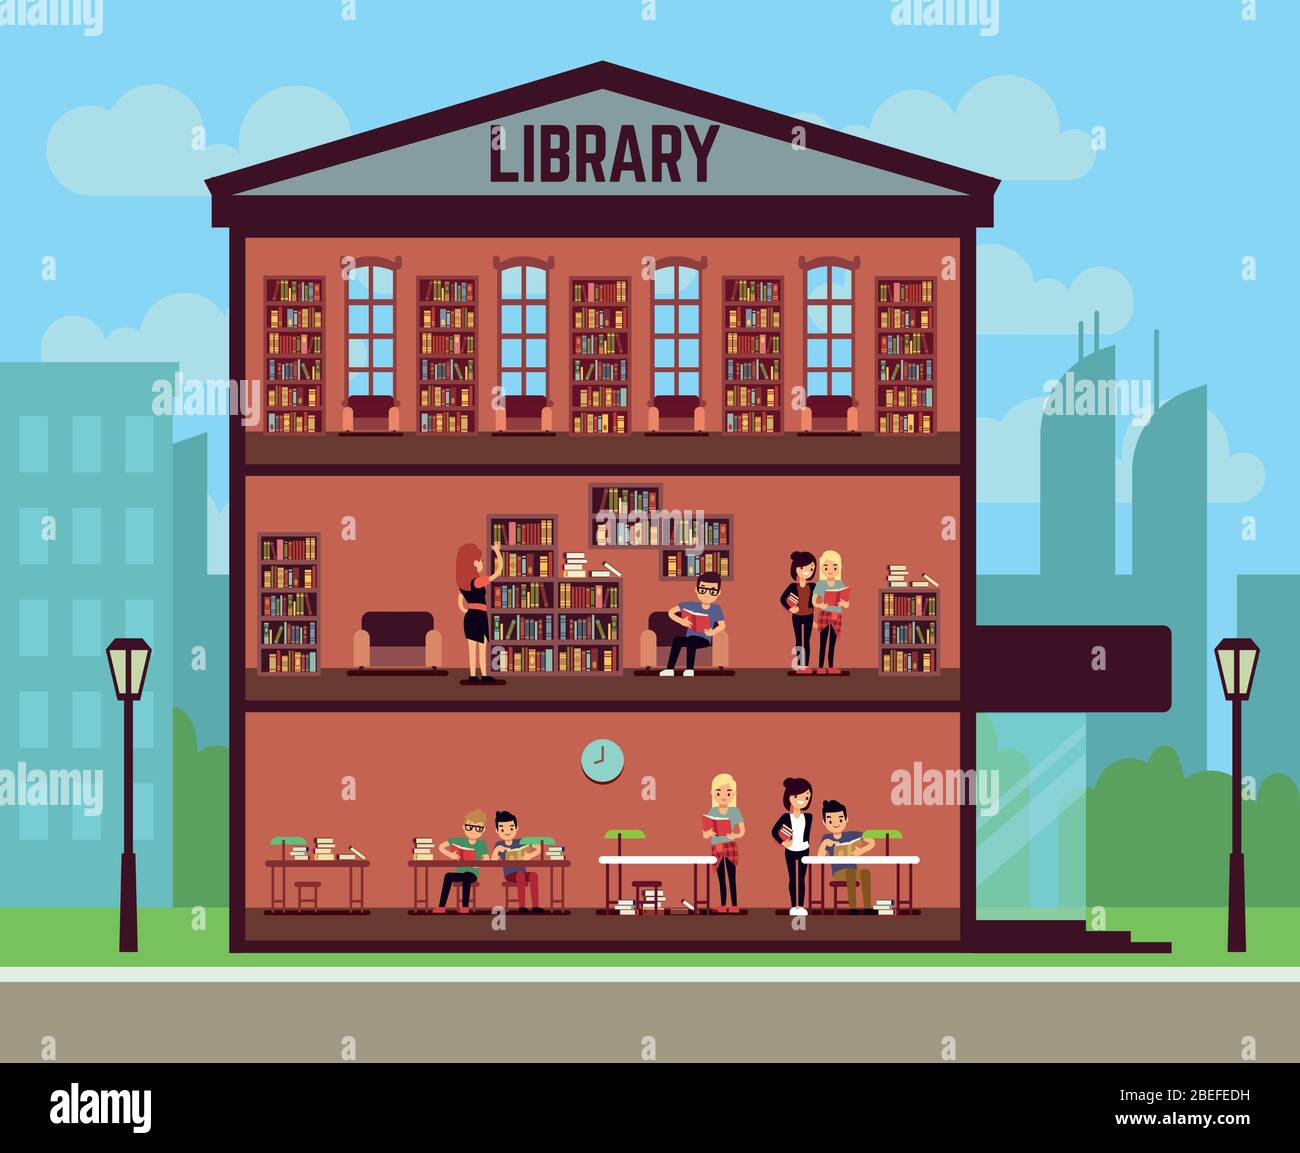 Konzept der öffentlichen Bibliothek mit verschiedenen Studierenden, die Bücher lesen. Vektorgrafik Stock Vektor